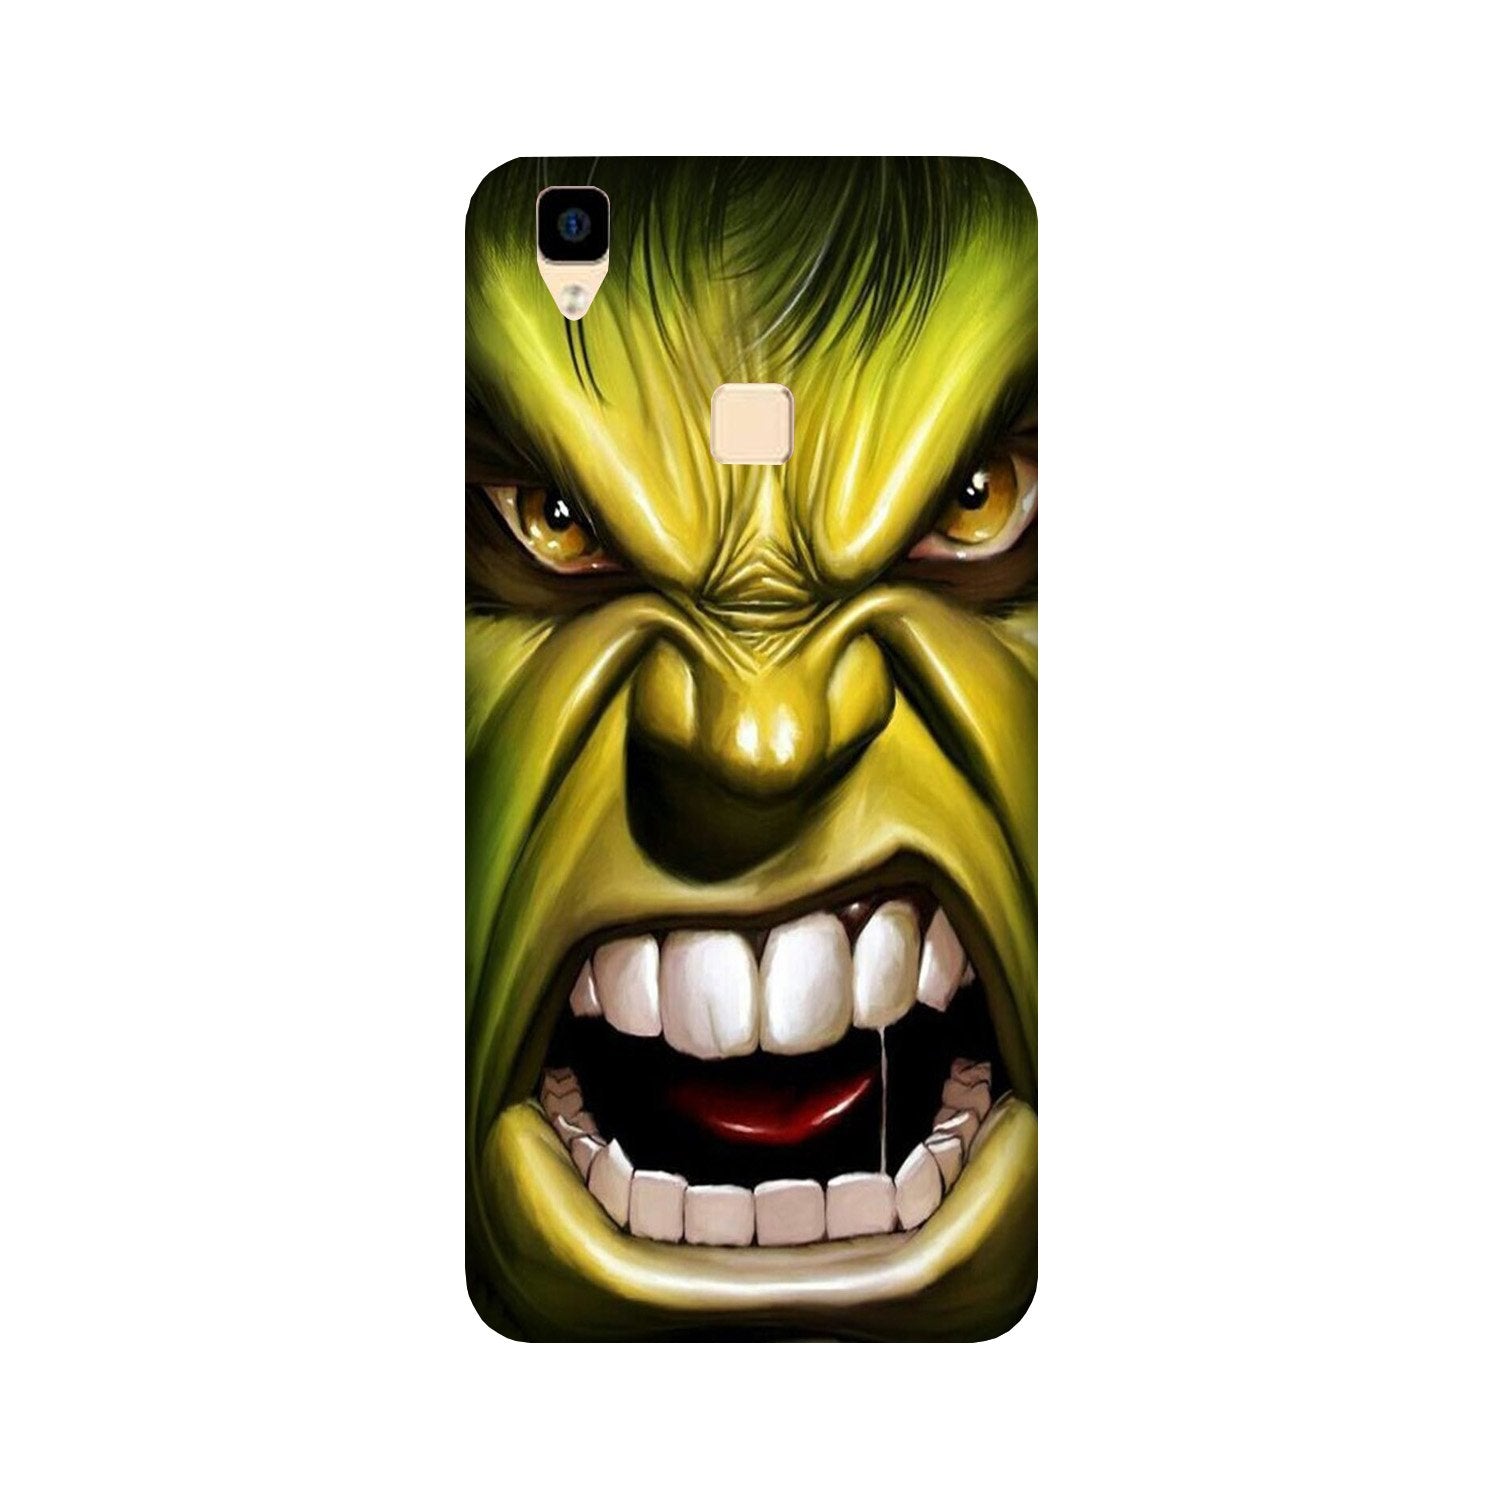 Hulk Superhero Case for Vivo V3(Design - 121)